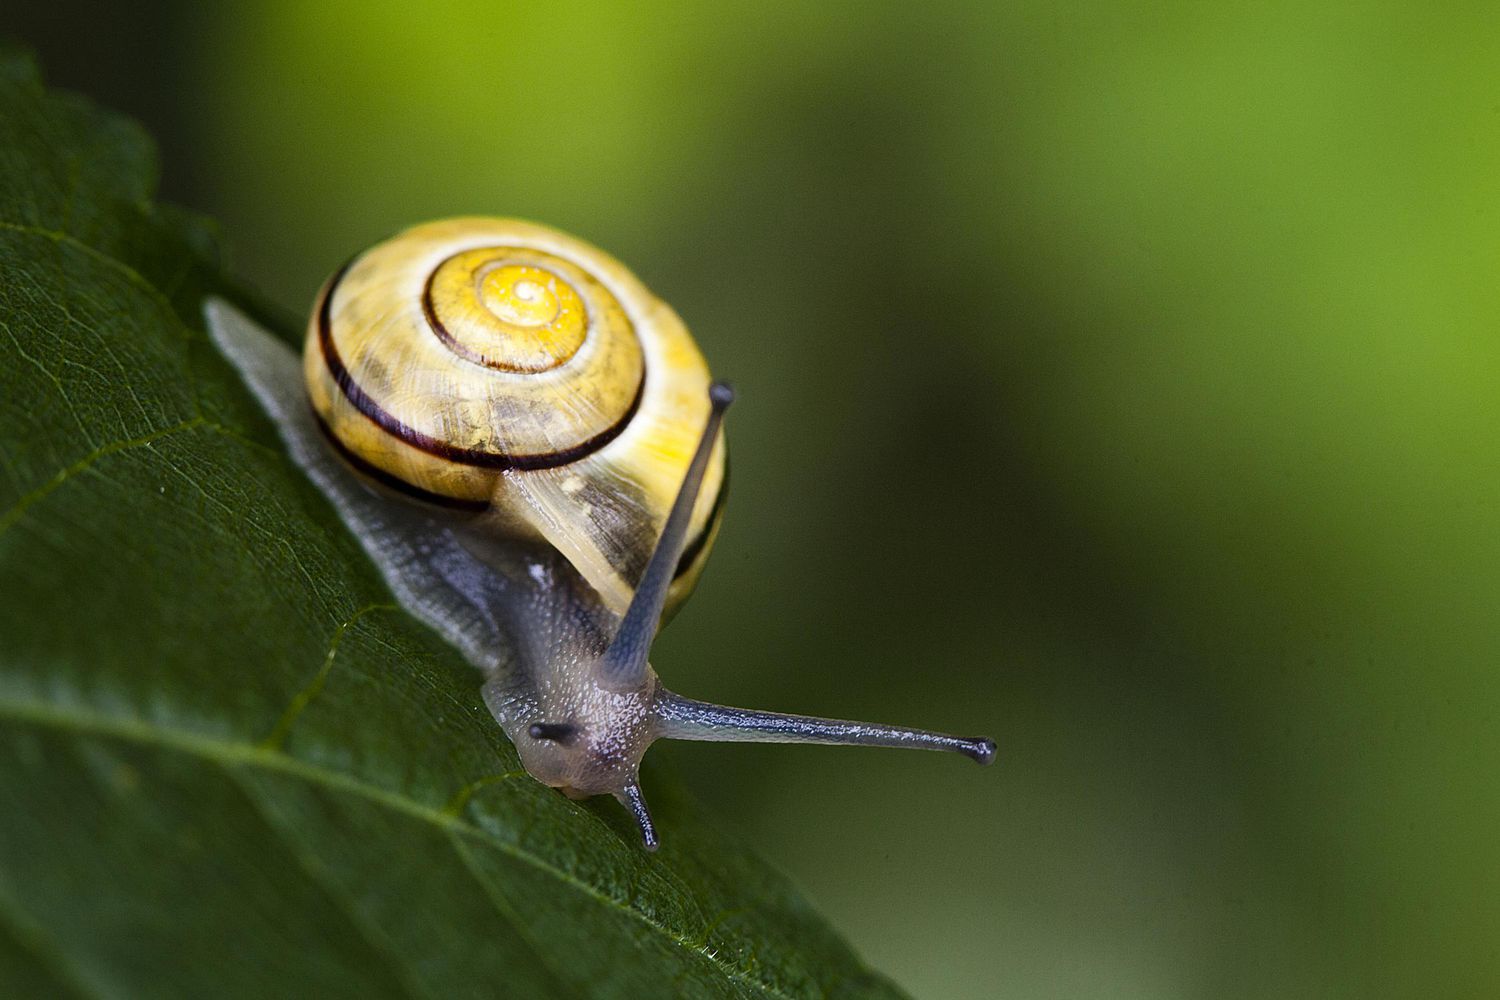 Grove Snail on a leaf.